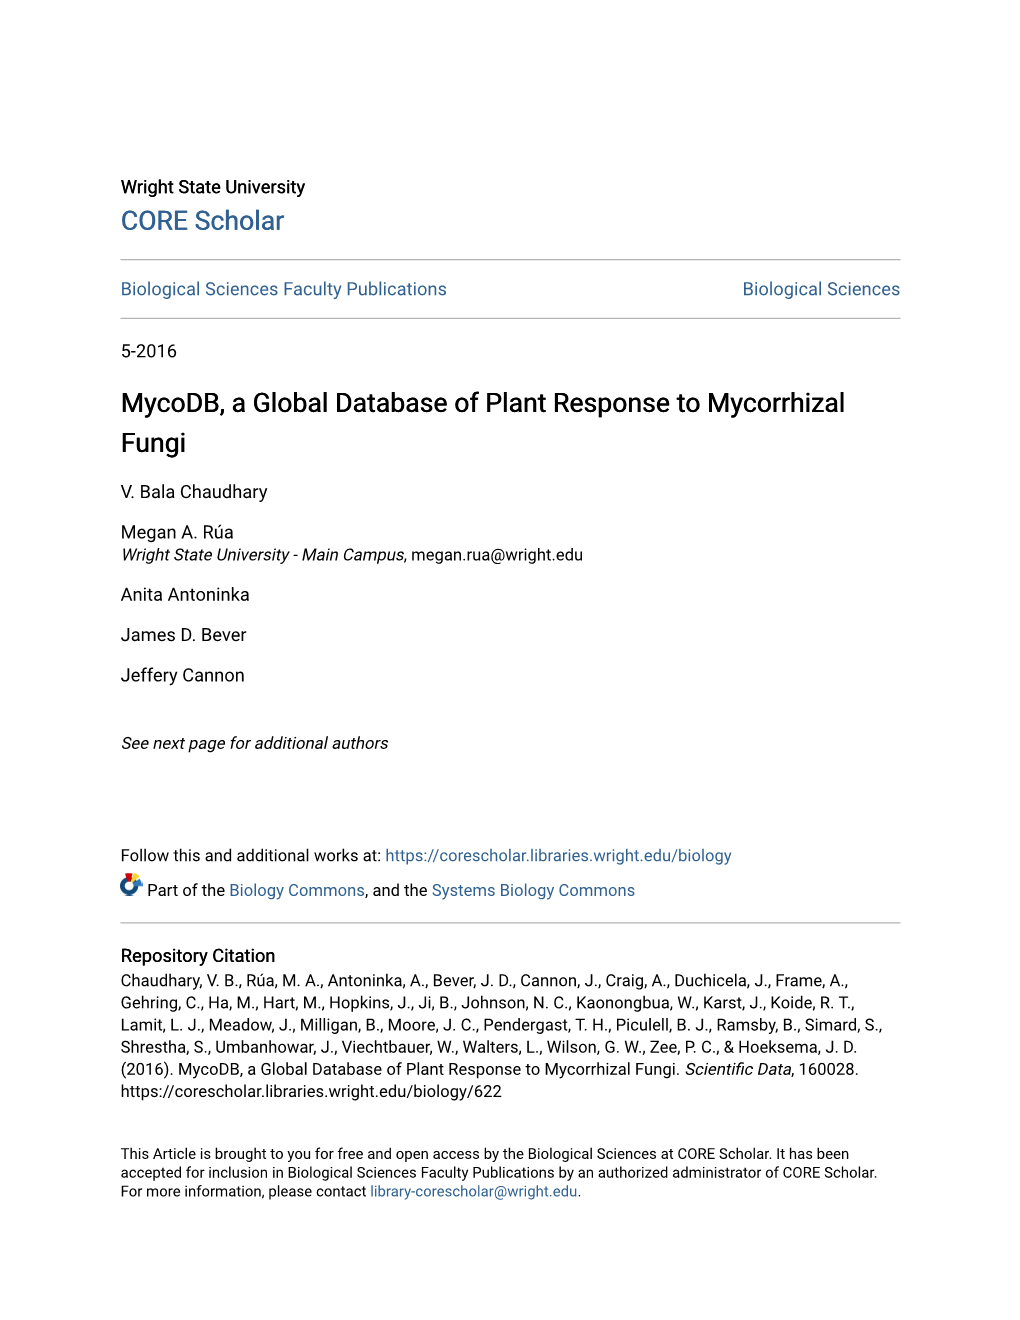 Mycodb, a Global Database of Plant Response to Mycorrhizal Fungi